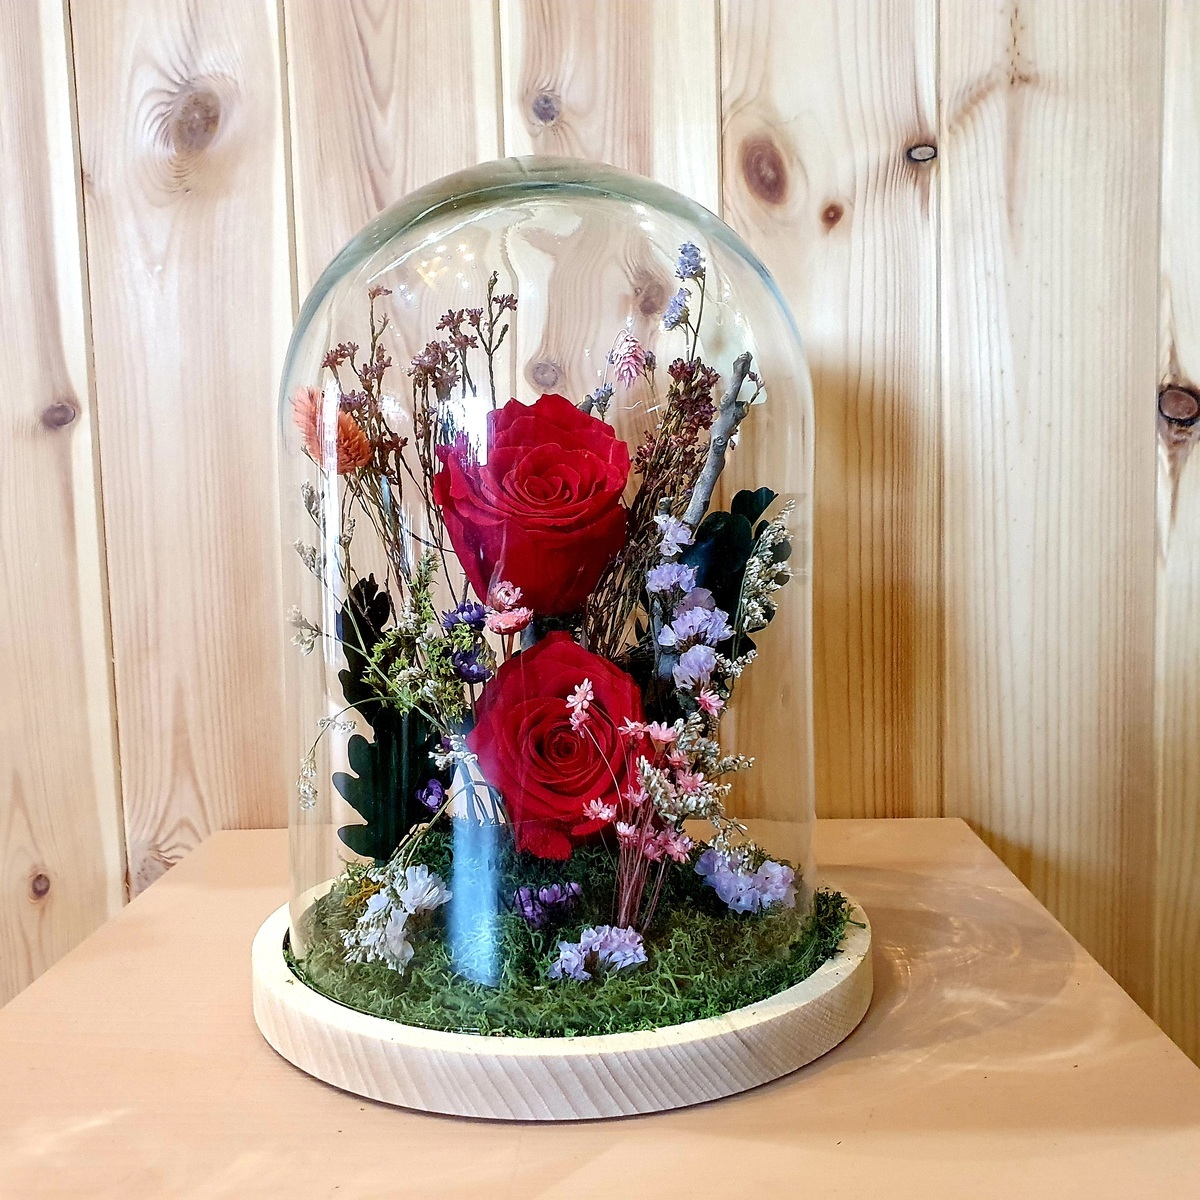 Cúpula cristal 2 rosas blancas preservadas | Envío 48/72 horas | Zerca